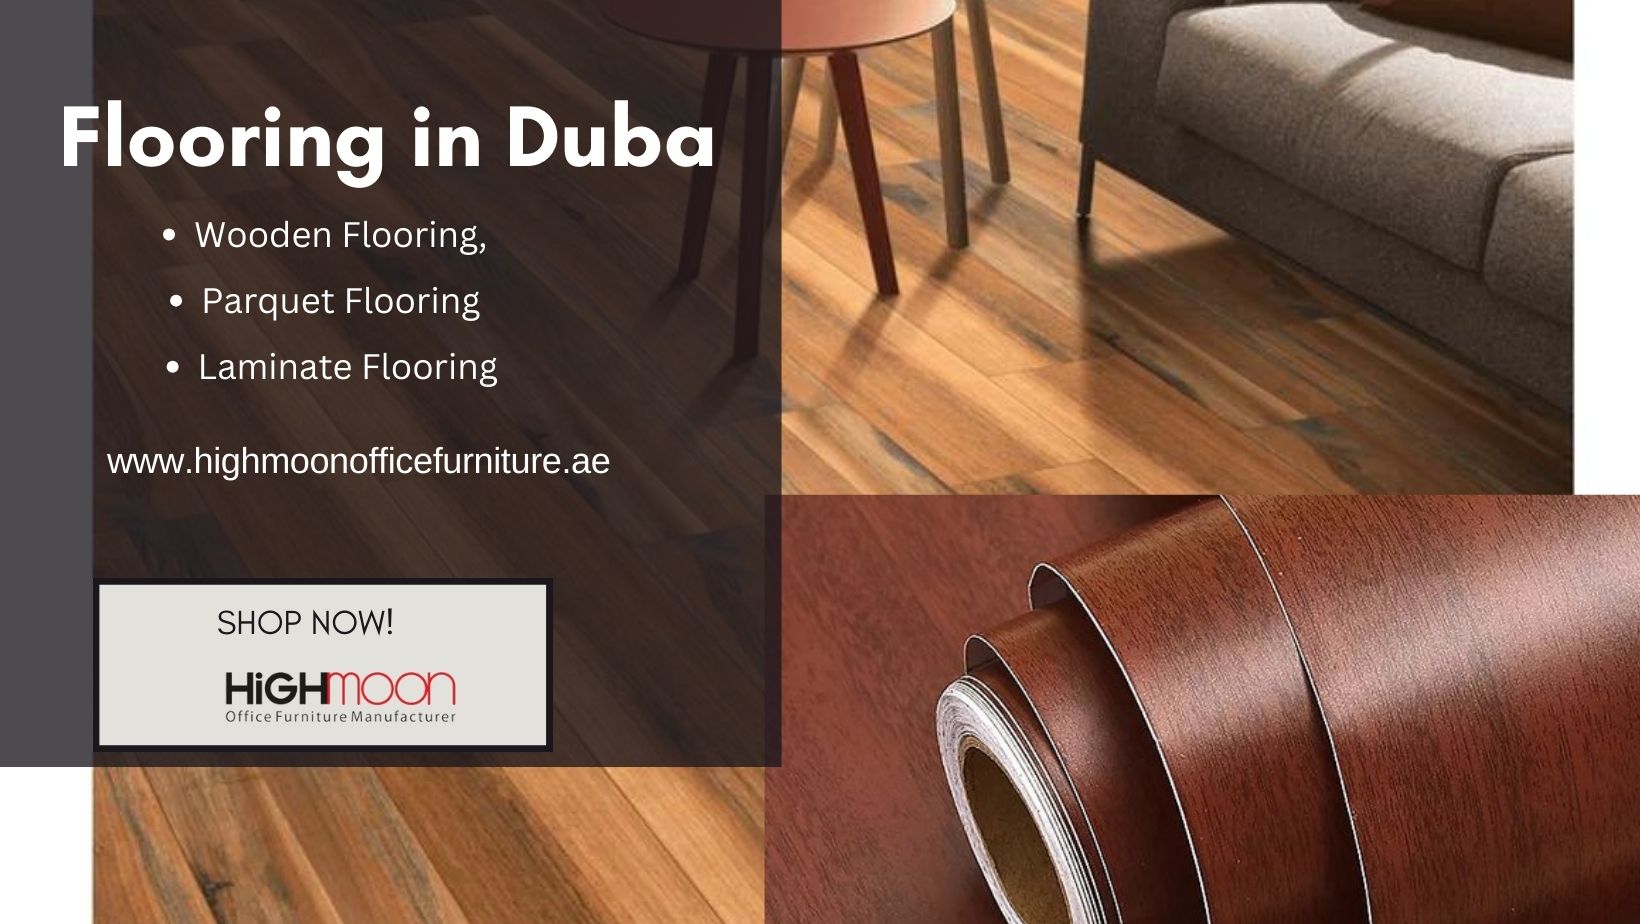 Flooring in Dubai – Wooden Flooring, Parquet Flooring, Laminate Flooring